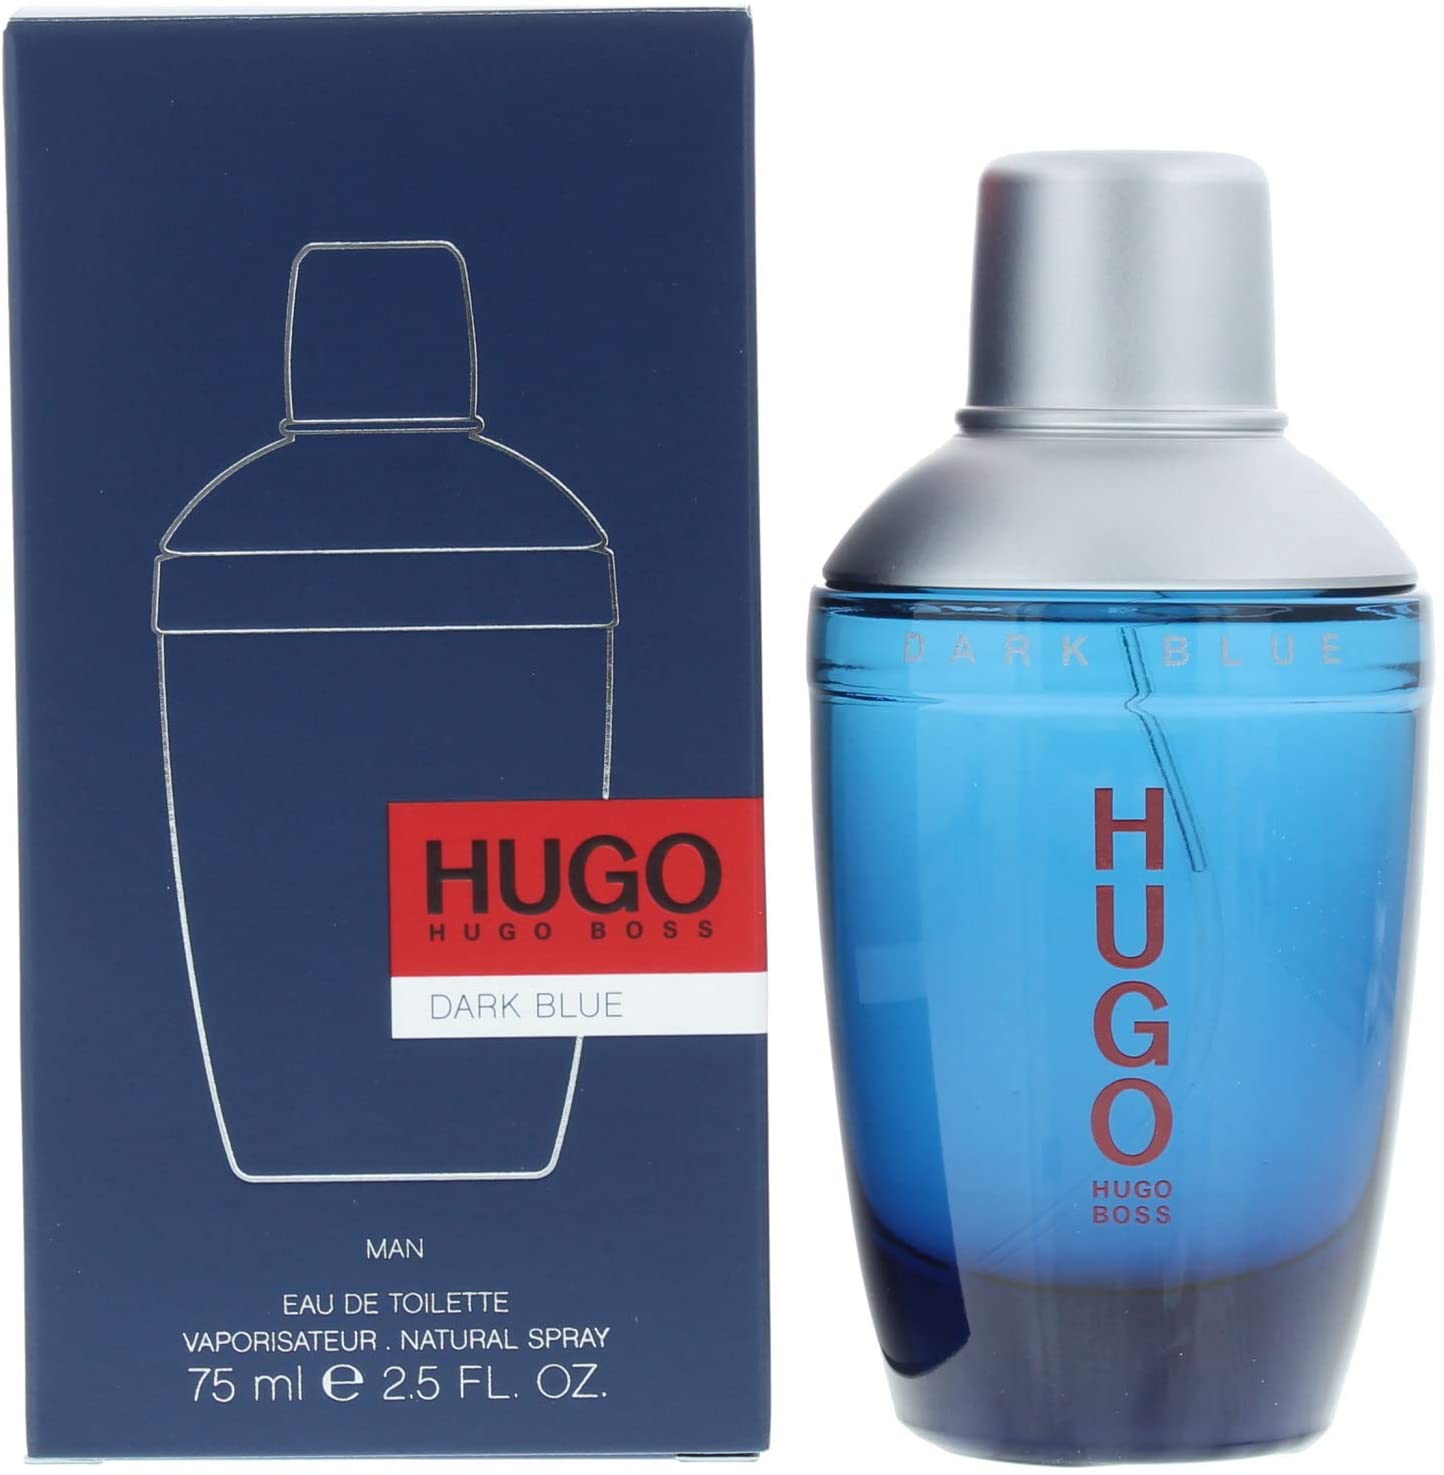 Hugo Boss Eau De Toilette, Dark Blue, 75 Ml — UnityJ-UK